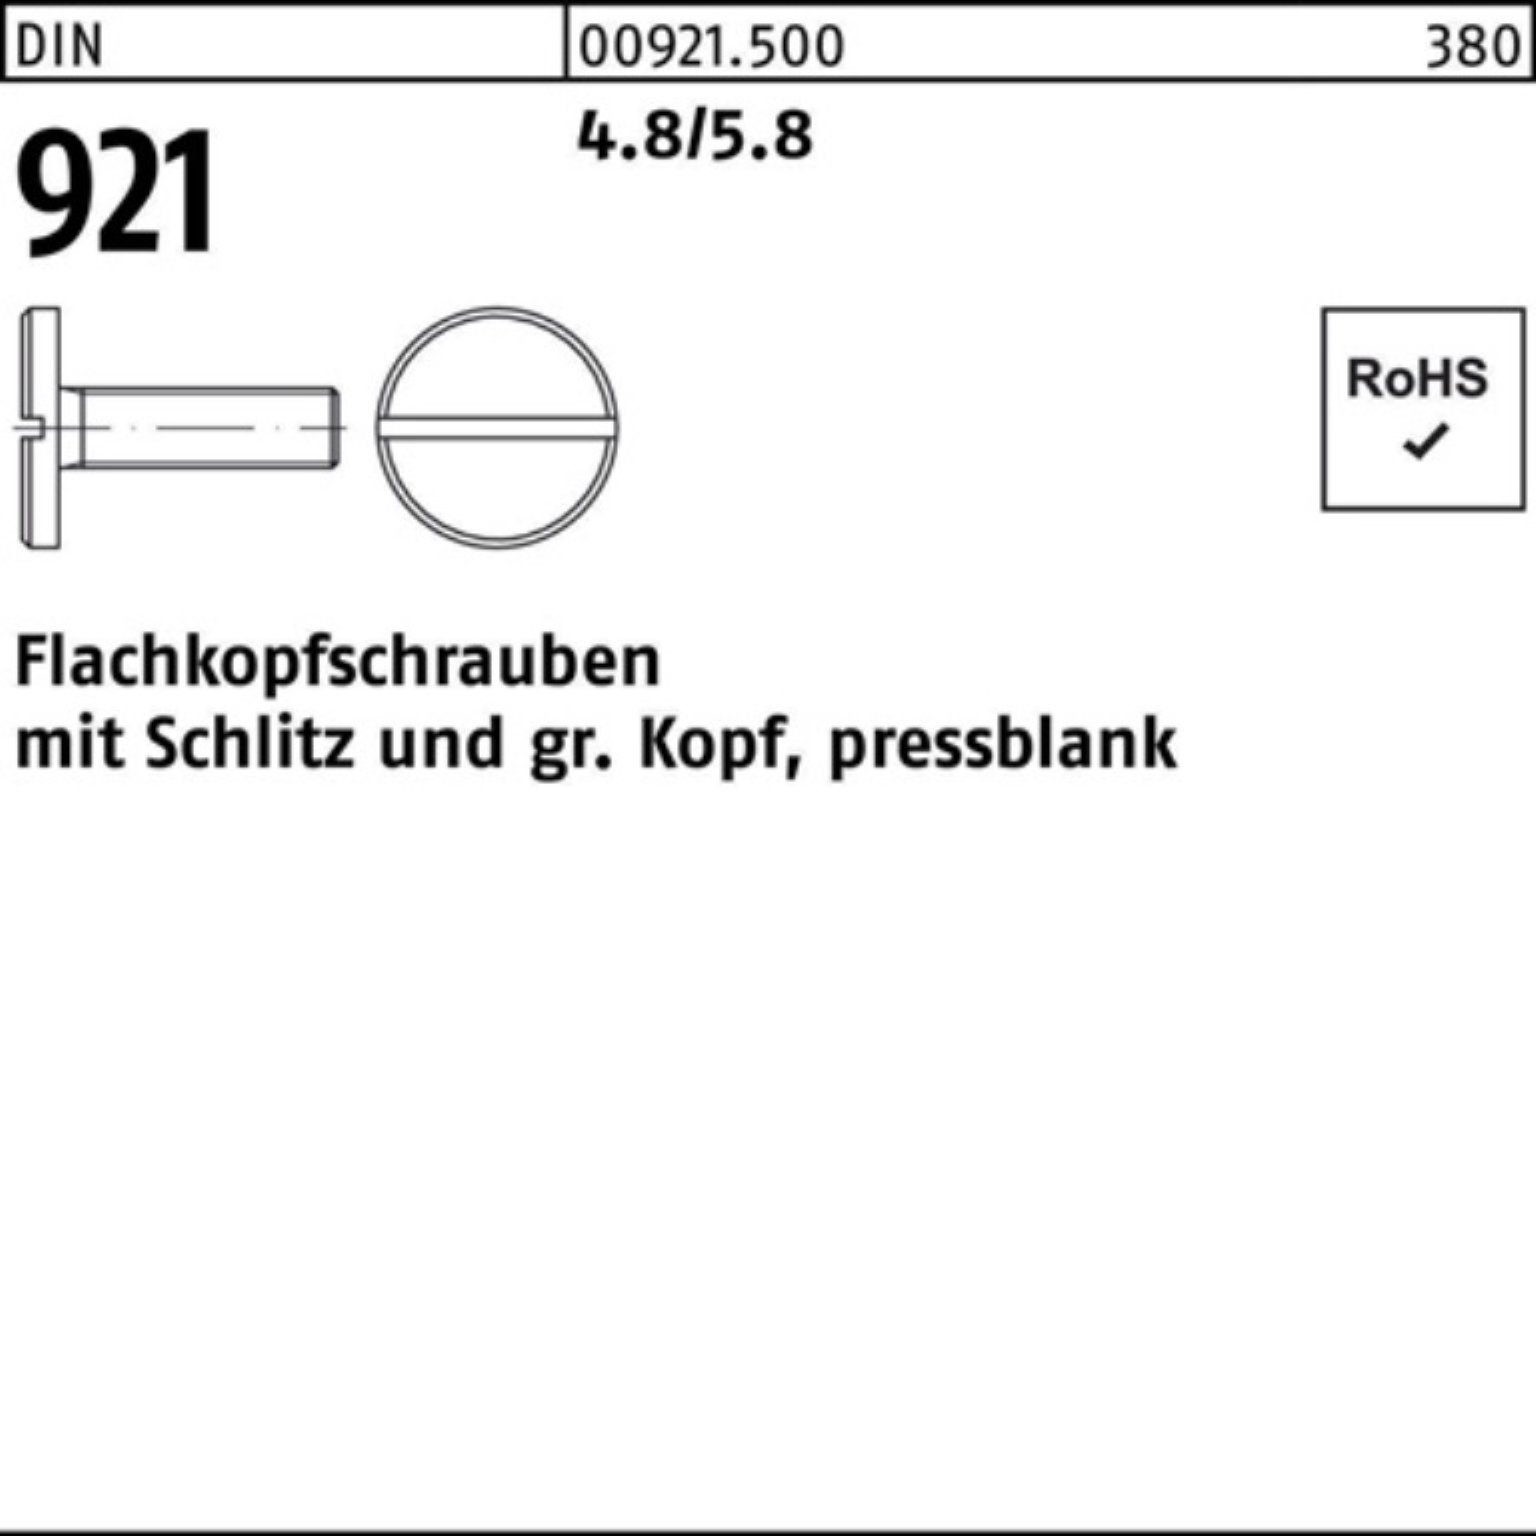 Reyher Schraube 100er 921 Flachkopfschraube 4.8/5.8 Schlitz 100 M4x Stück 5 Pack DIN